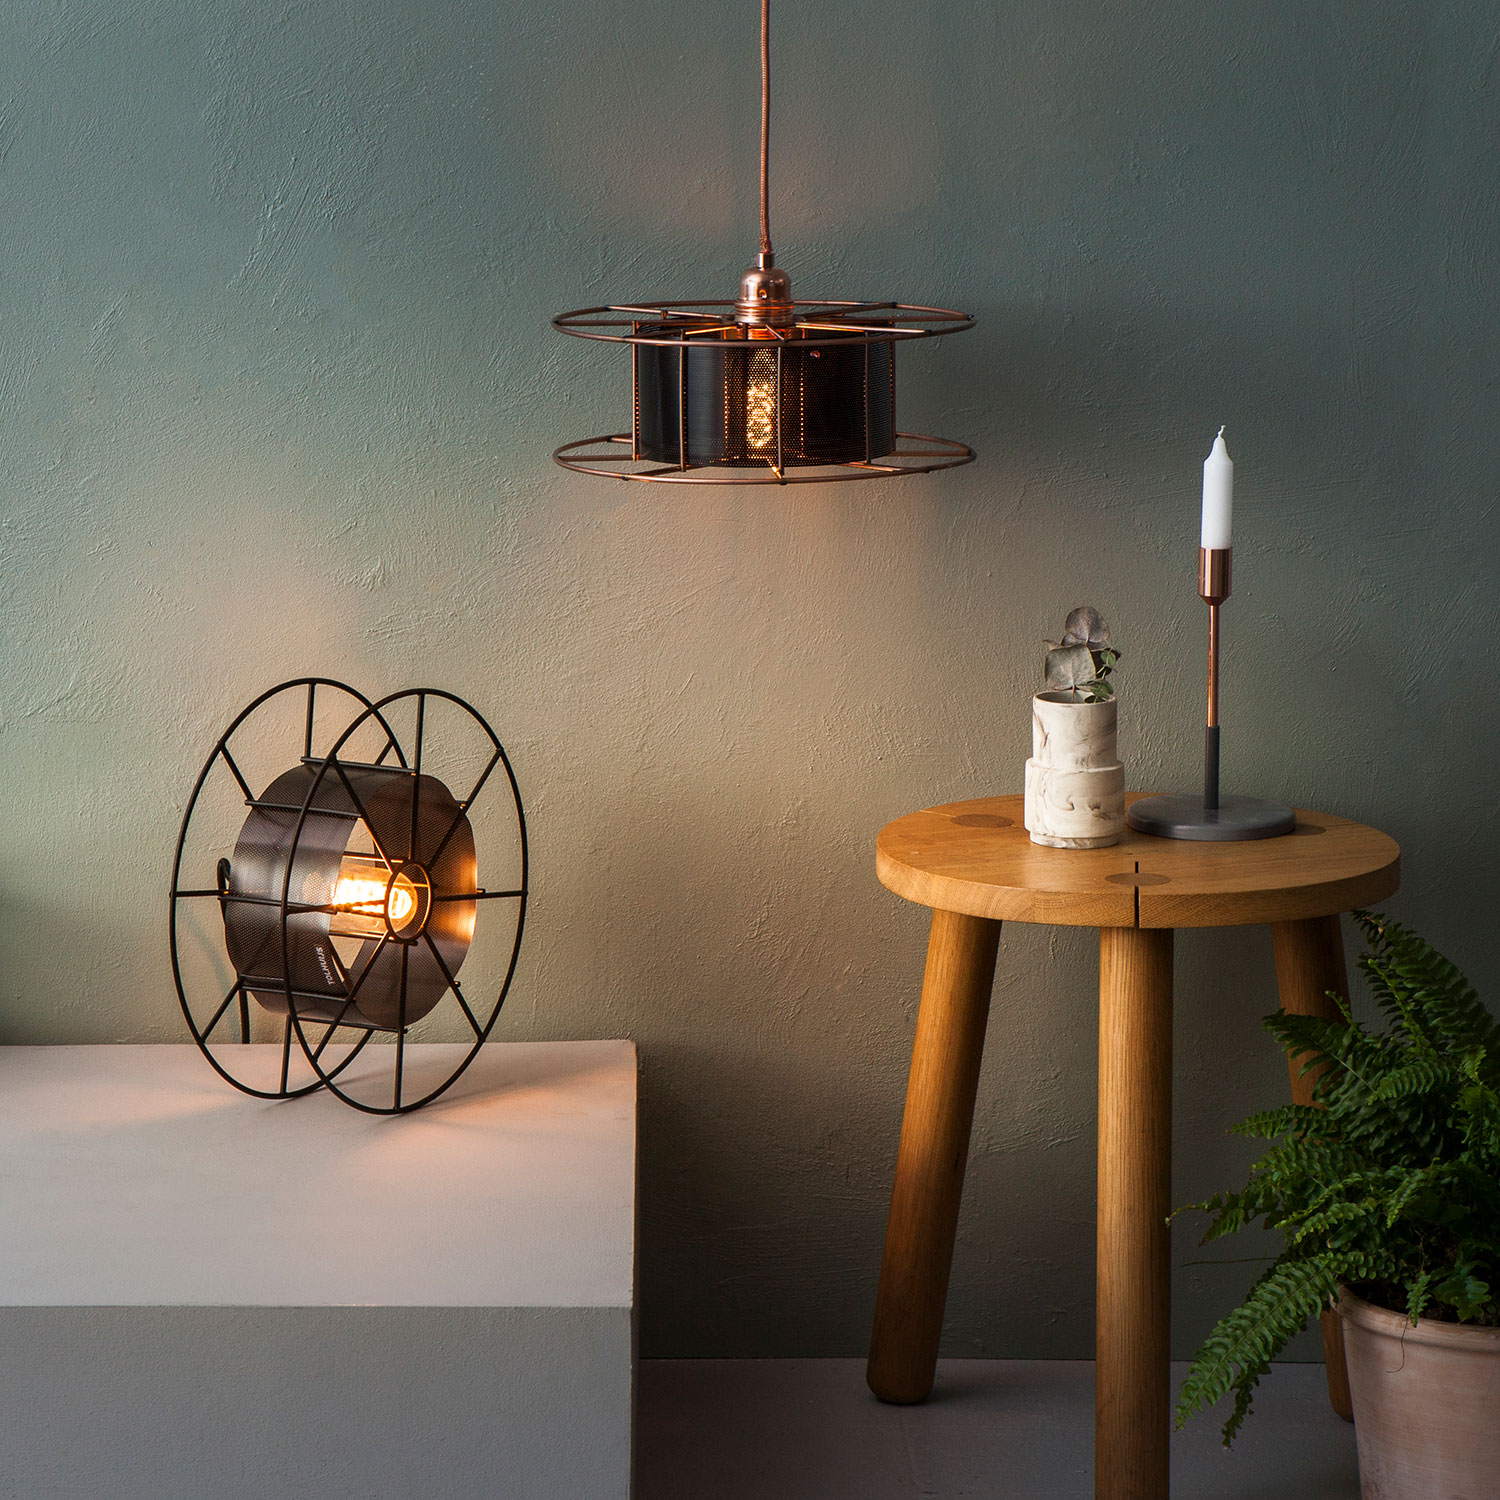 De SPOOL met zwarte kap van Tolhuijs Design is een duurzame koperen hanglamp van gerecycled materiaal bij Studio Perspective.